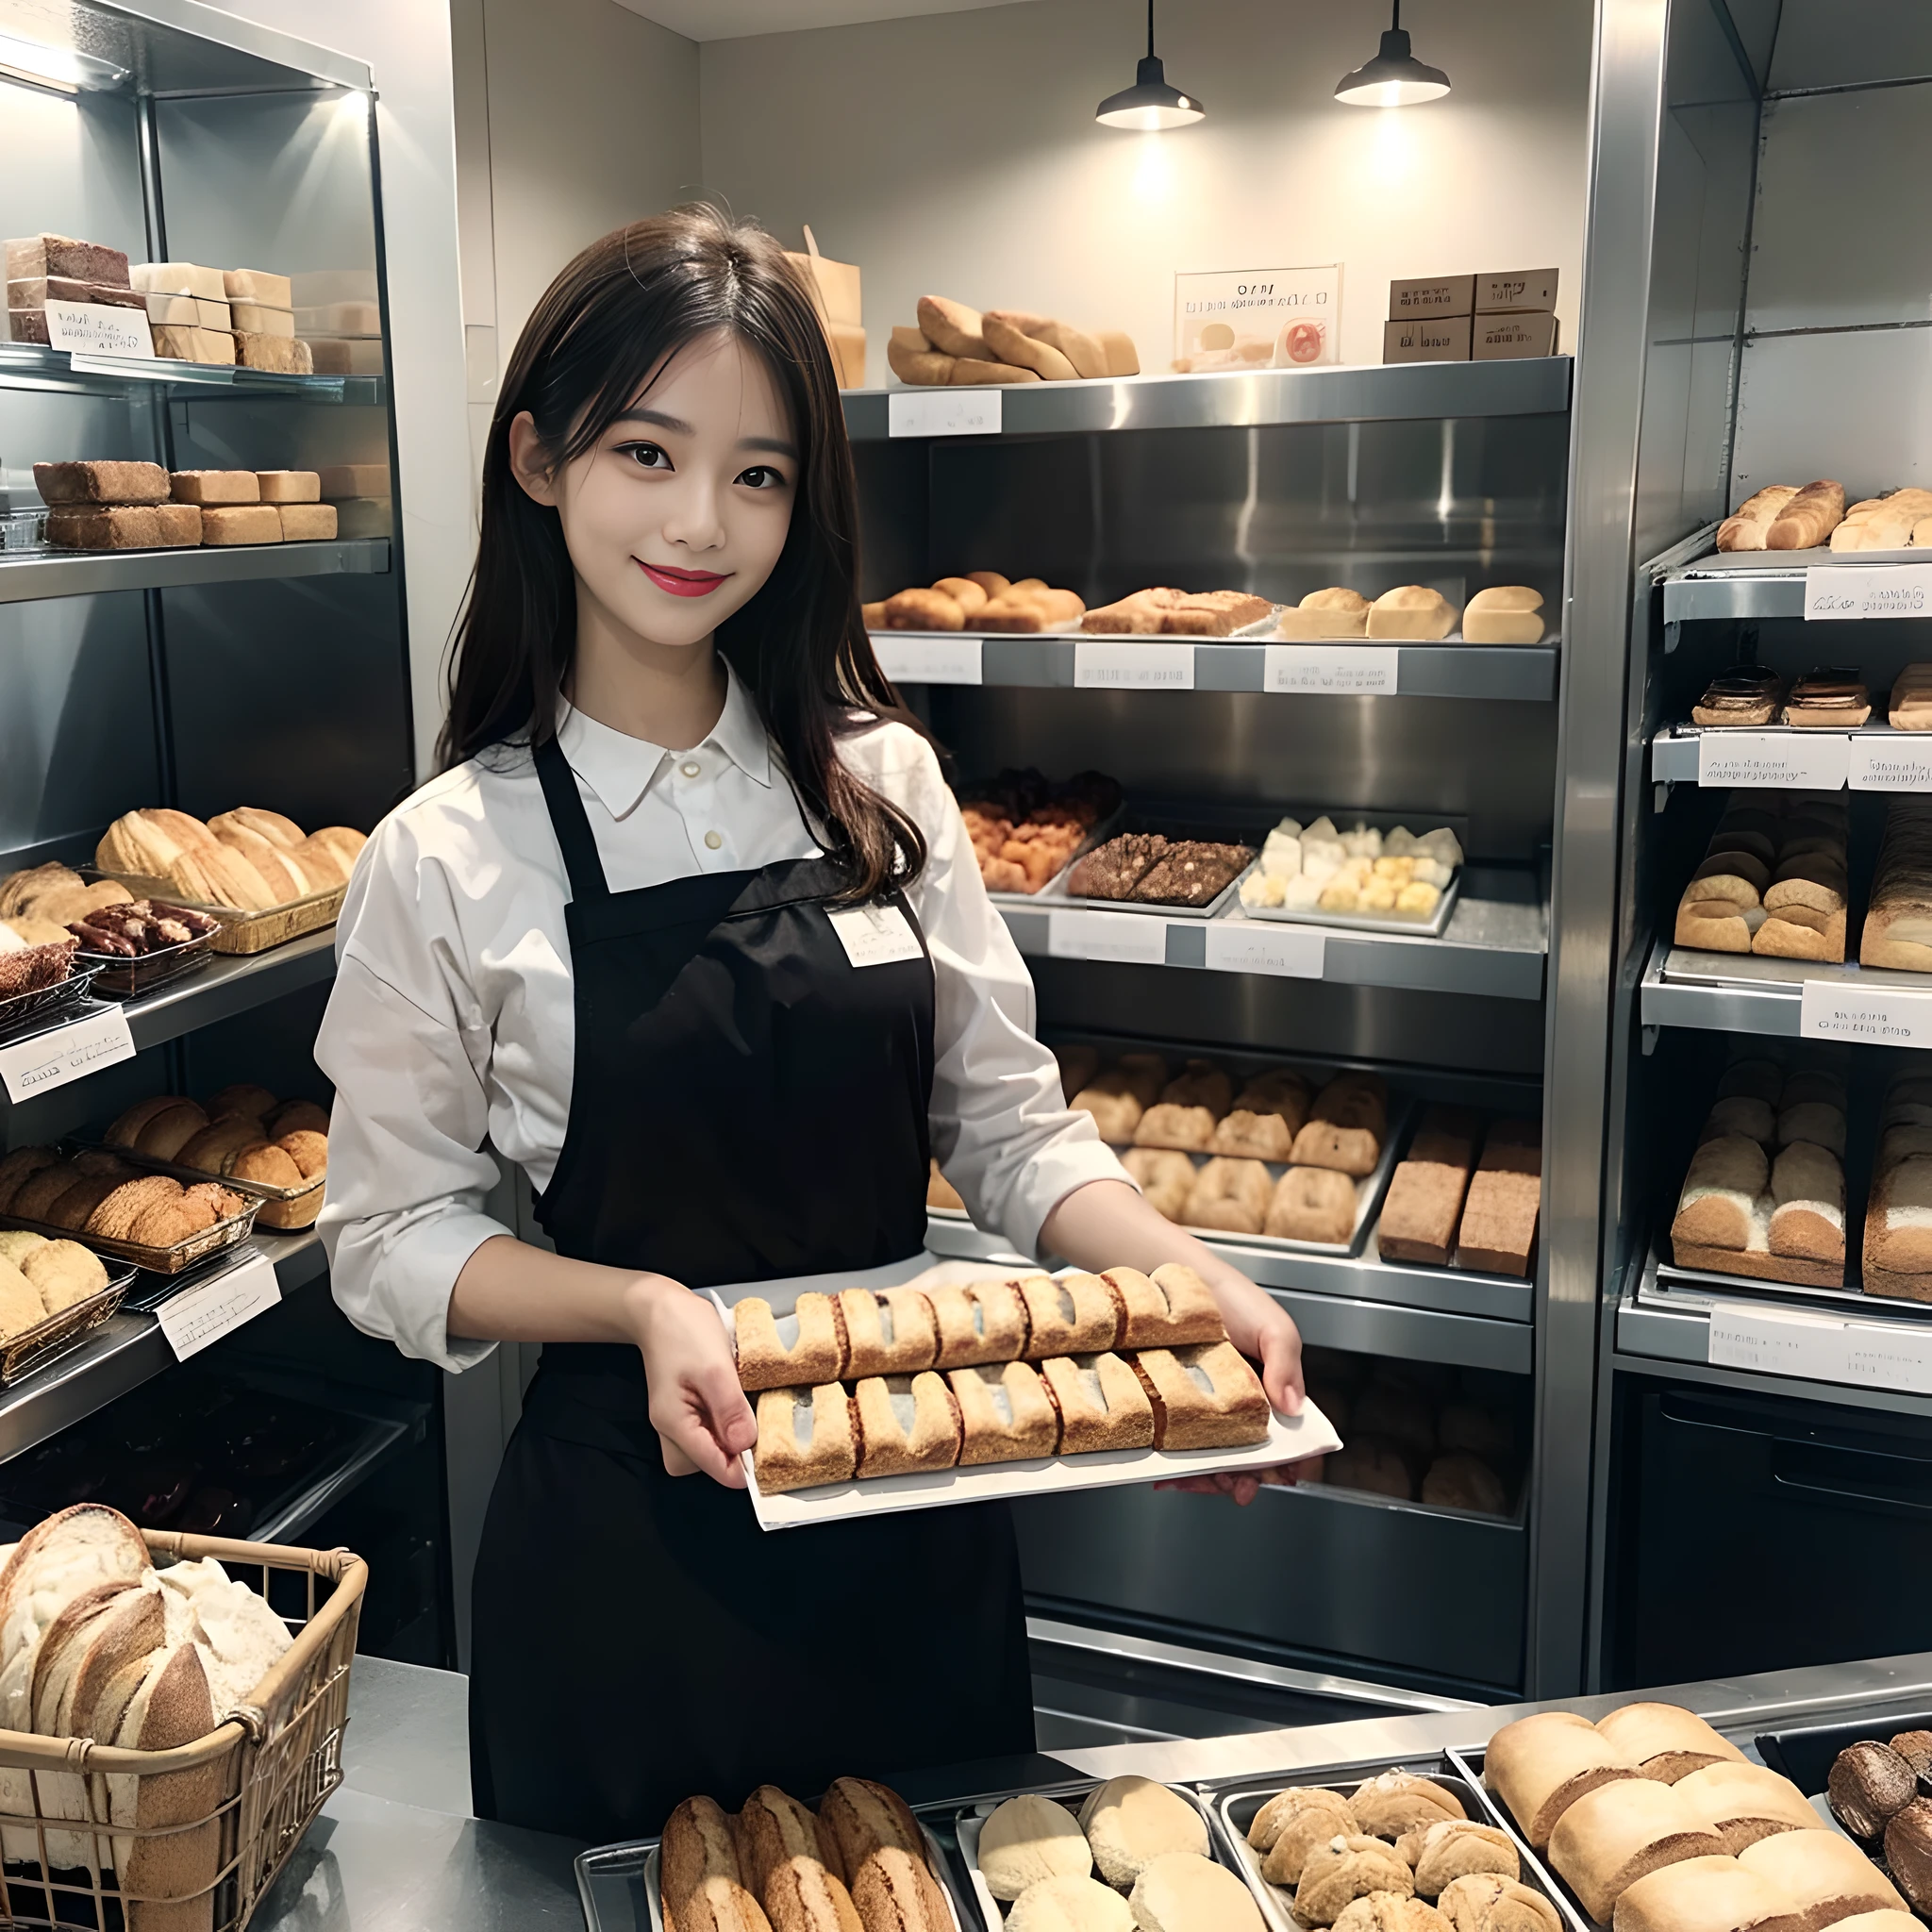 面包店女店员、新鲜出炉的面包、一个微笑